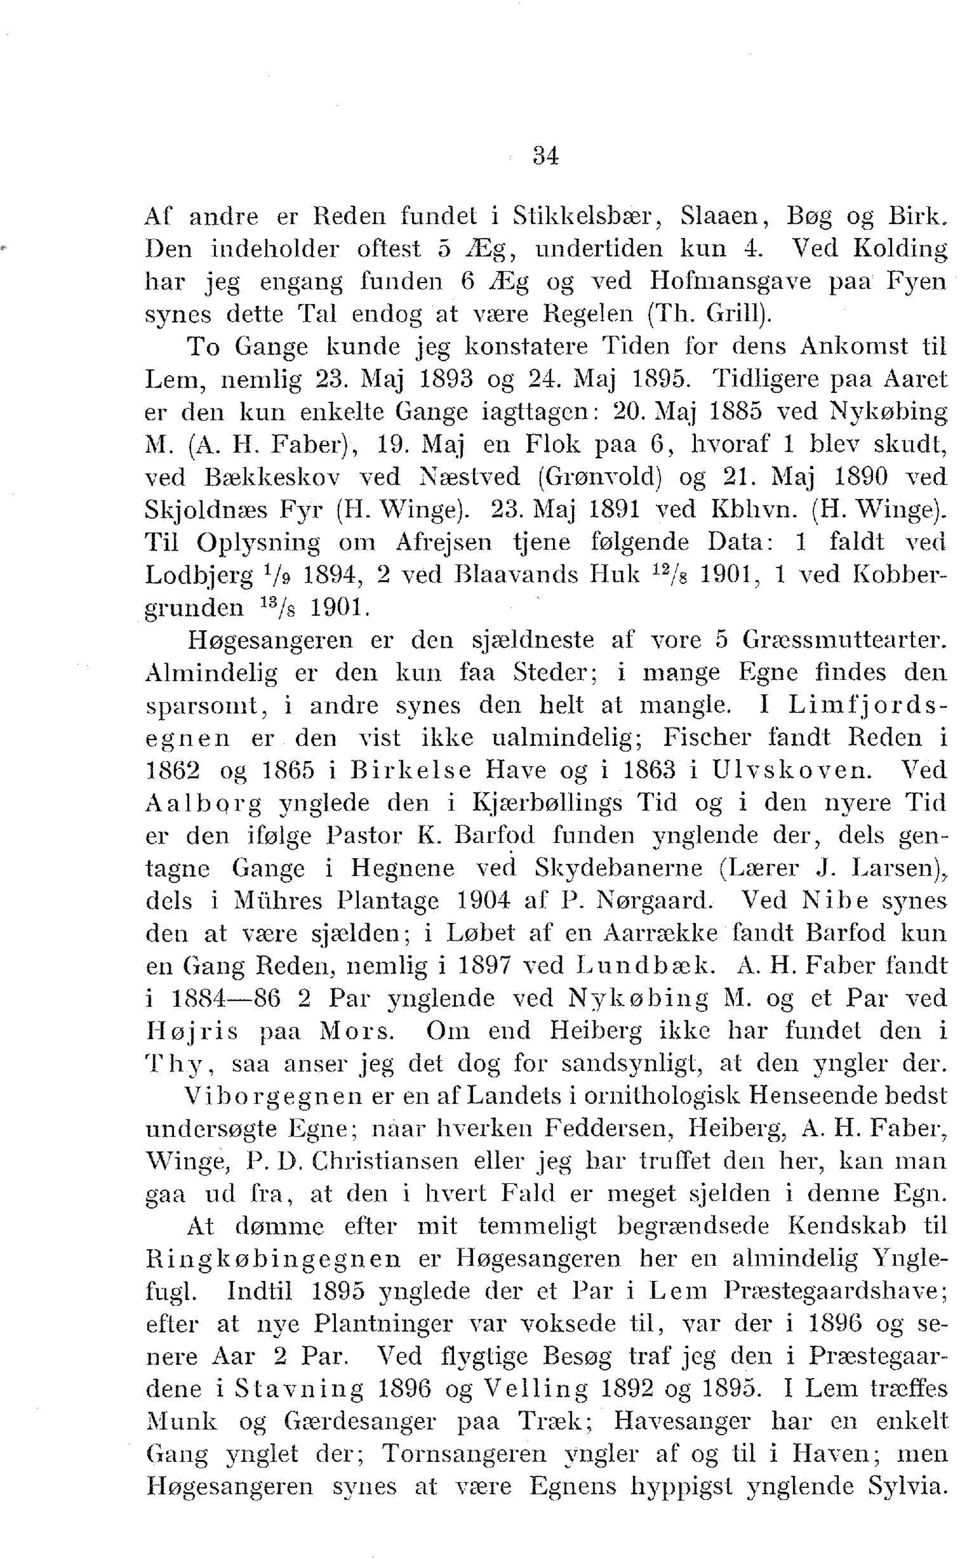 Maj 1893 og 24. Maj 1895. Tidligere paa Aaret er den kun enkelte Gange iagttagen: 20. Maj 1885 ved Nykøbing M. (A. H. Faber), 19.